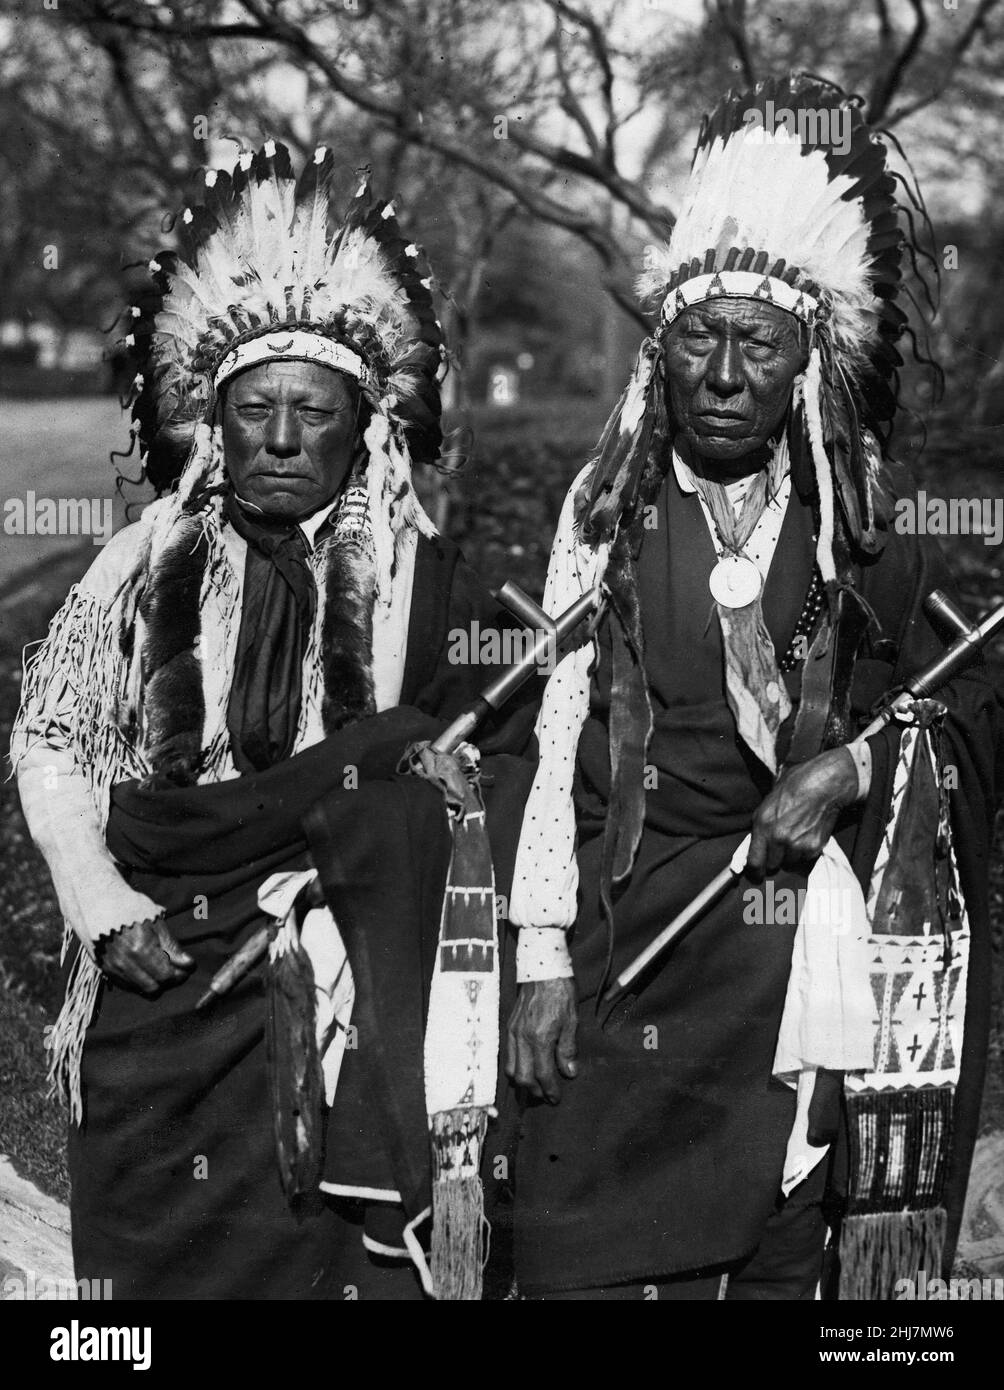 Photo antique et vintage - Cheyenne les chefs amérindiens / indiens / américains visitent le « Grand chef blanc ». Photo par Underwood & Underwood 1924. Banque D'Images